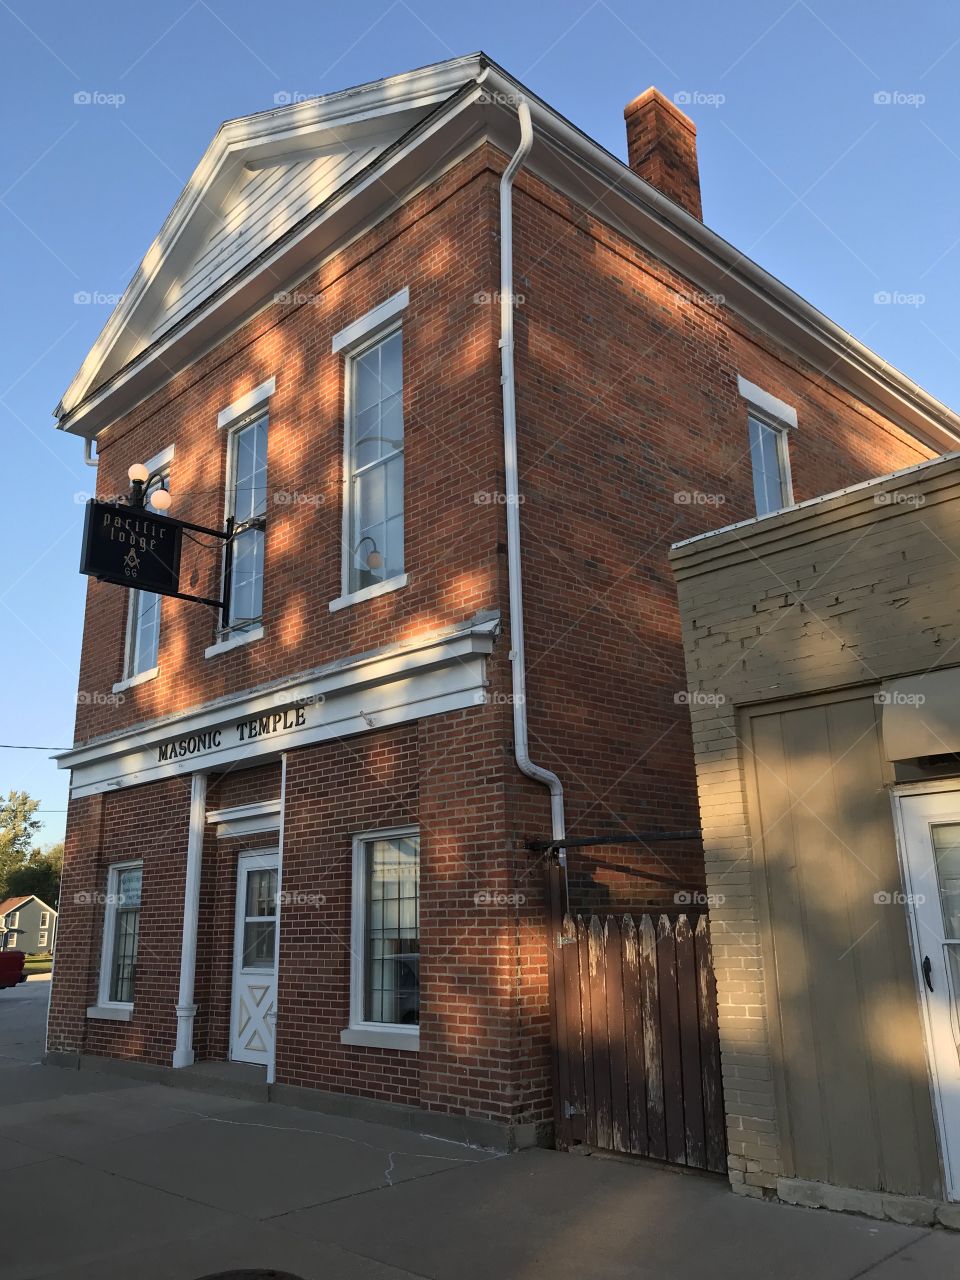 Masonic Temple in Knoxville, Illinois